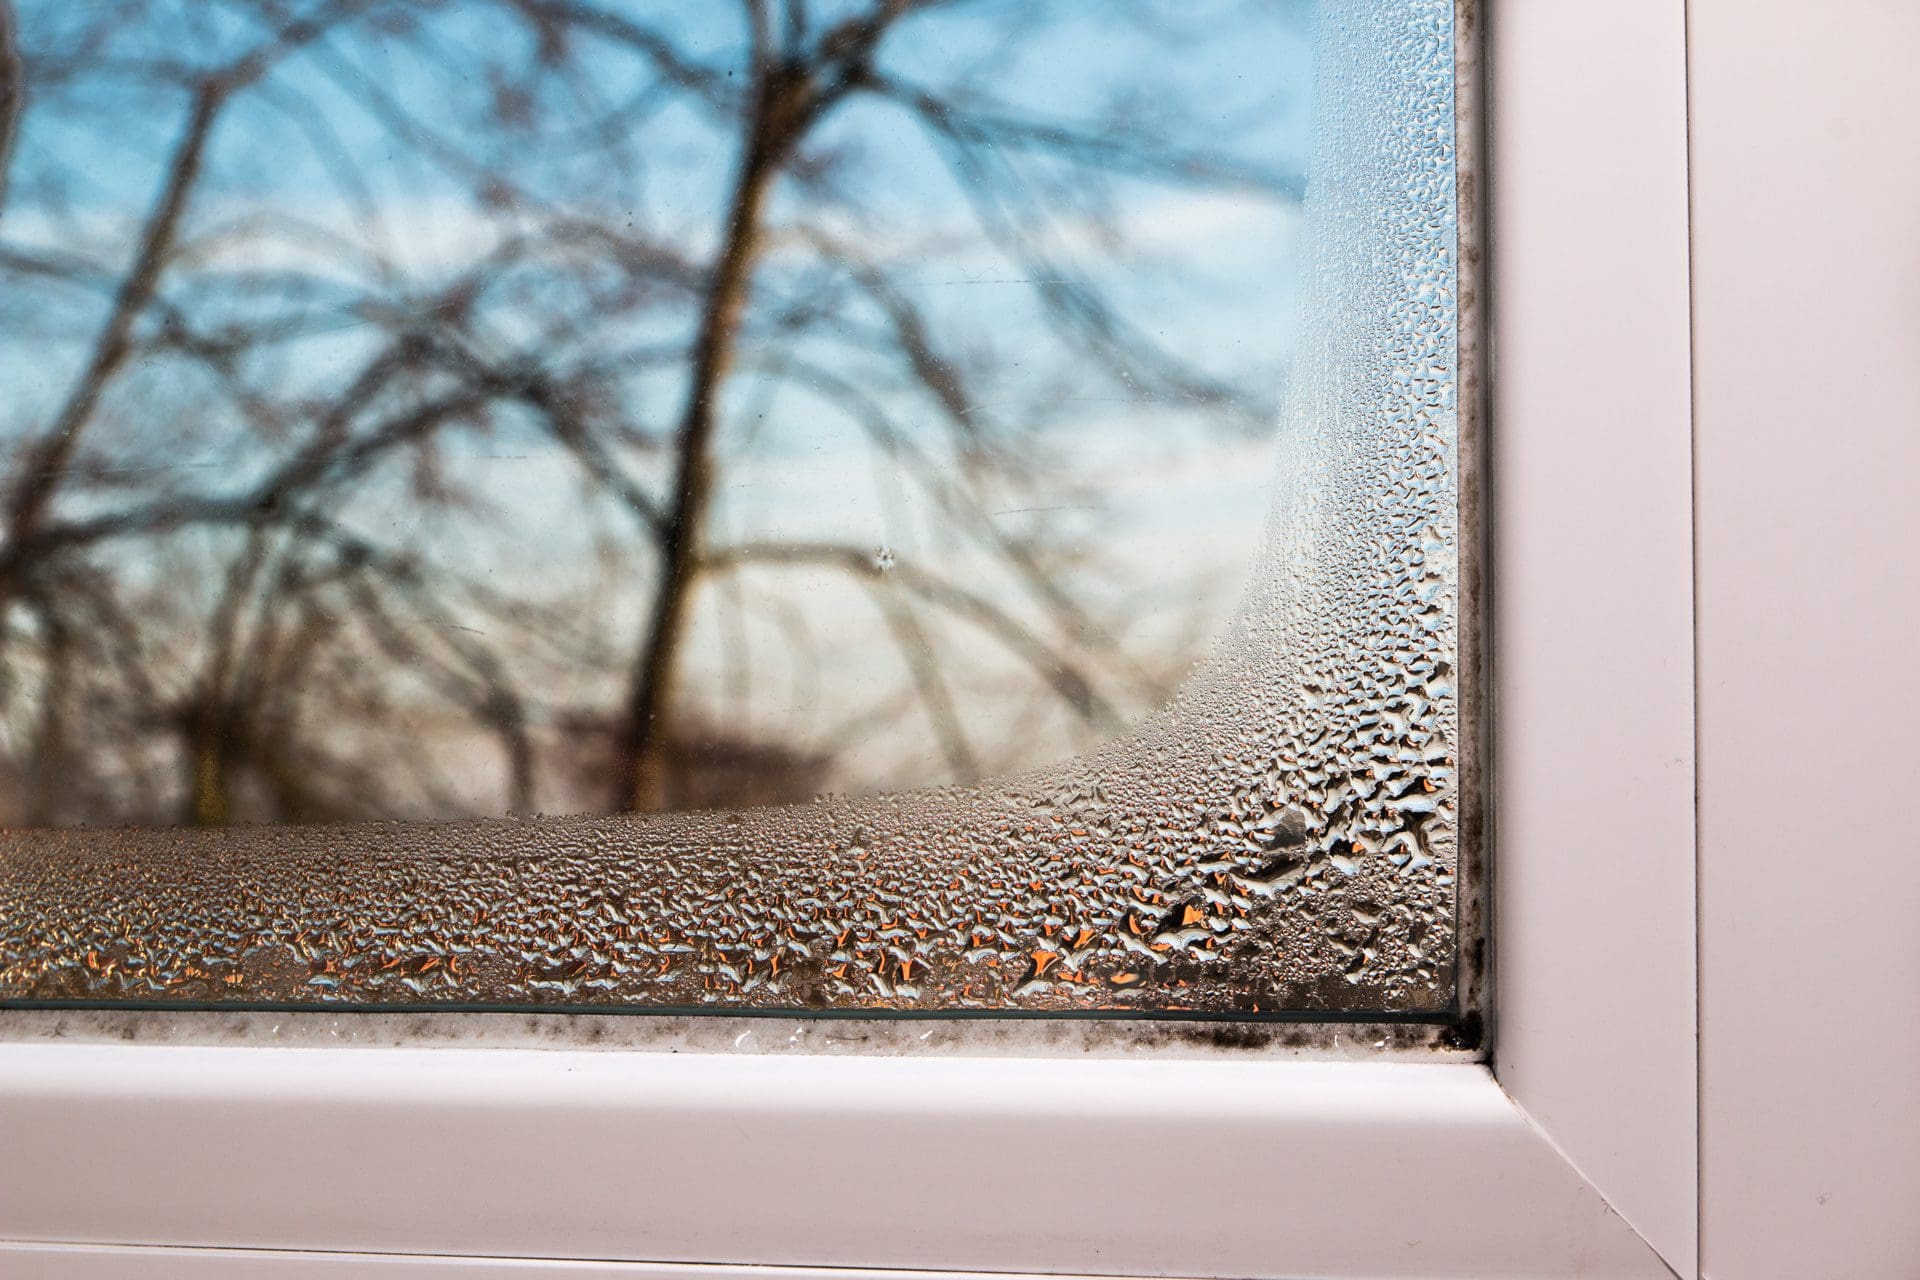 Kondenswasser am Fenster - Vorstufe einer Schimmelbildung? (© GChristo / stock.adobe.com)